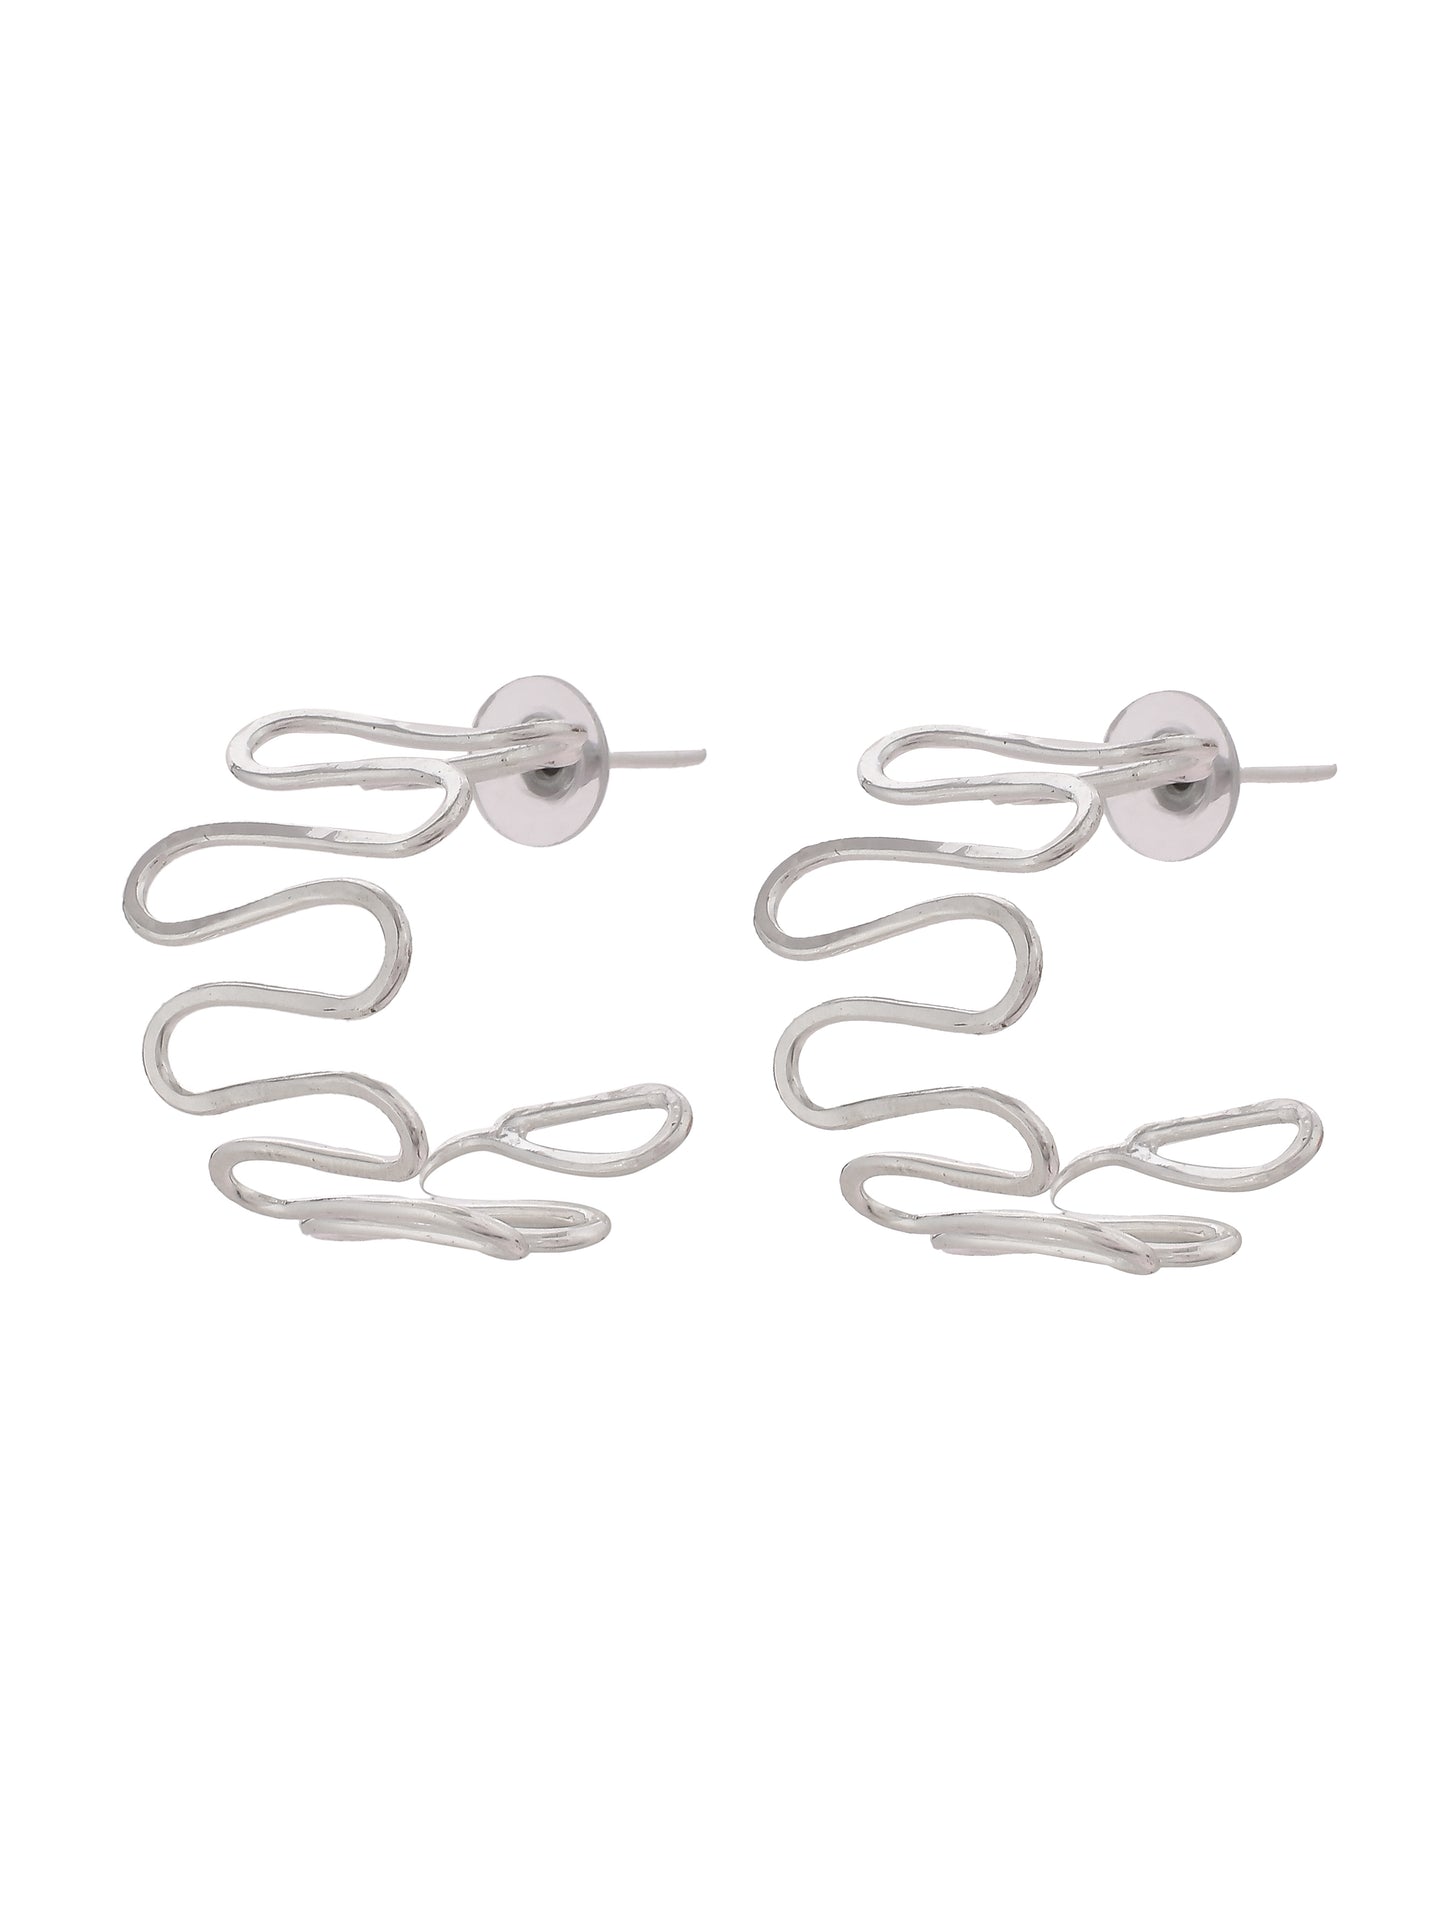 Designer Silver Plated Half Hoop Earrings